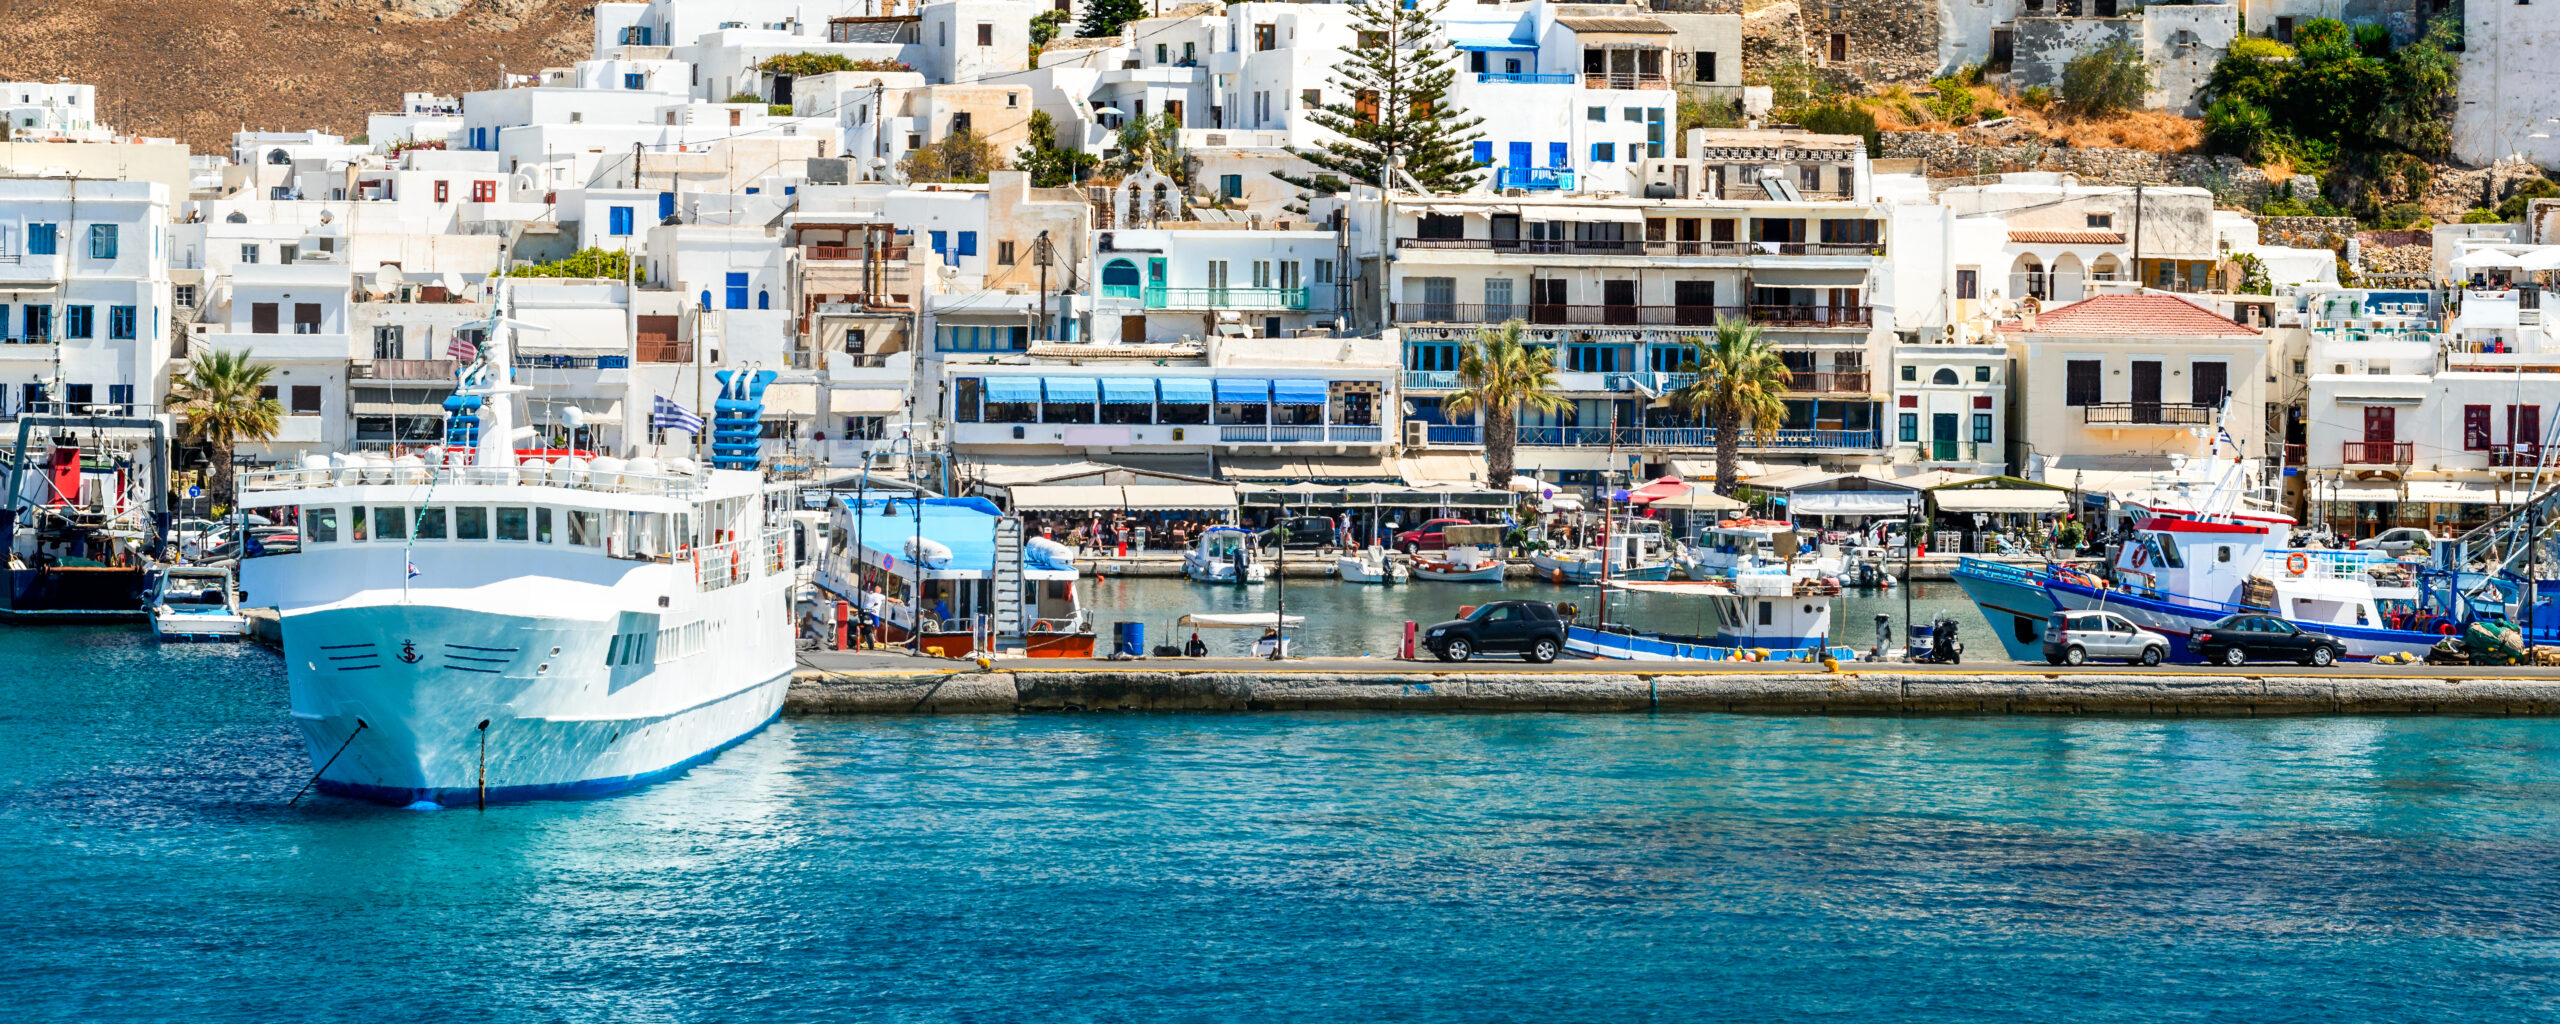 Vacanta de vara pe insula Naxos, Grecia – 362 euro (zbor + cazare)